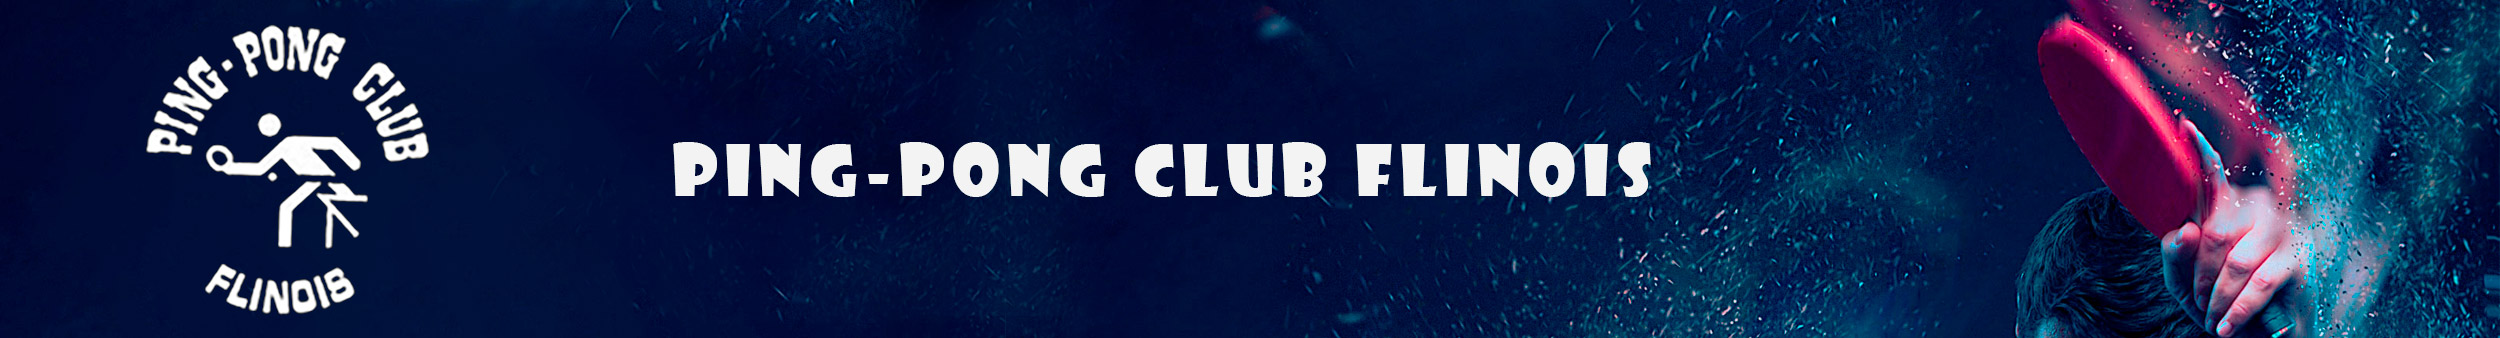 PPC Flines - Ping-pong club Flinois